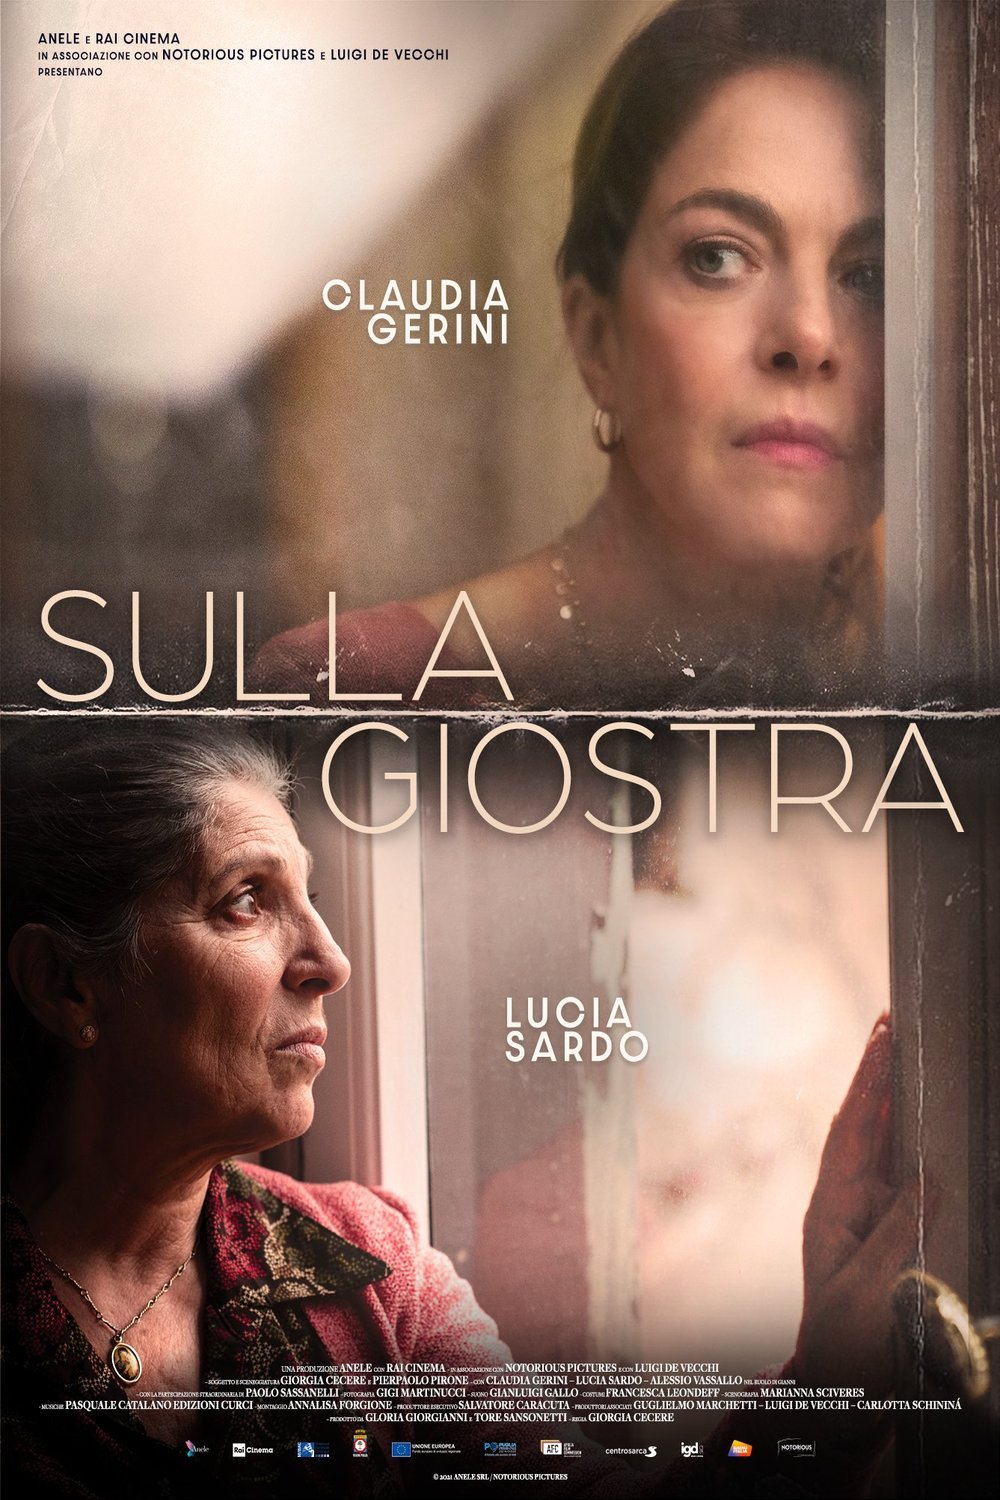 Italian poster of the movie Sulla giostra